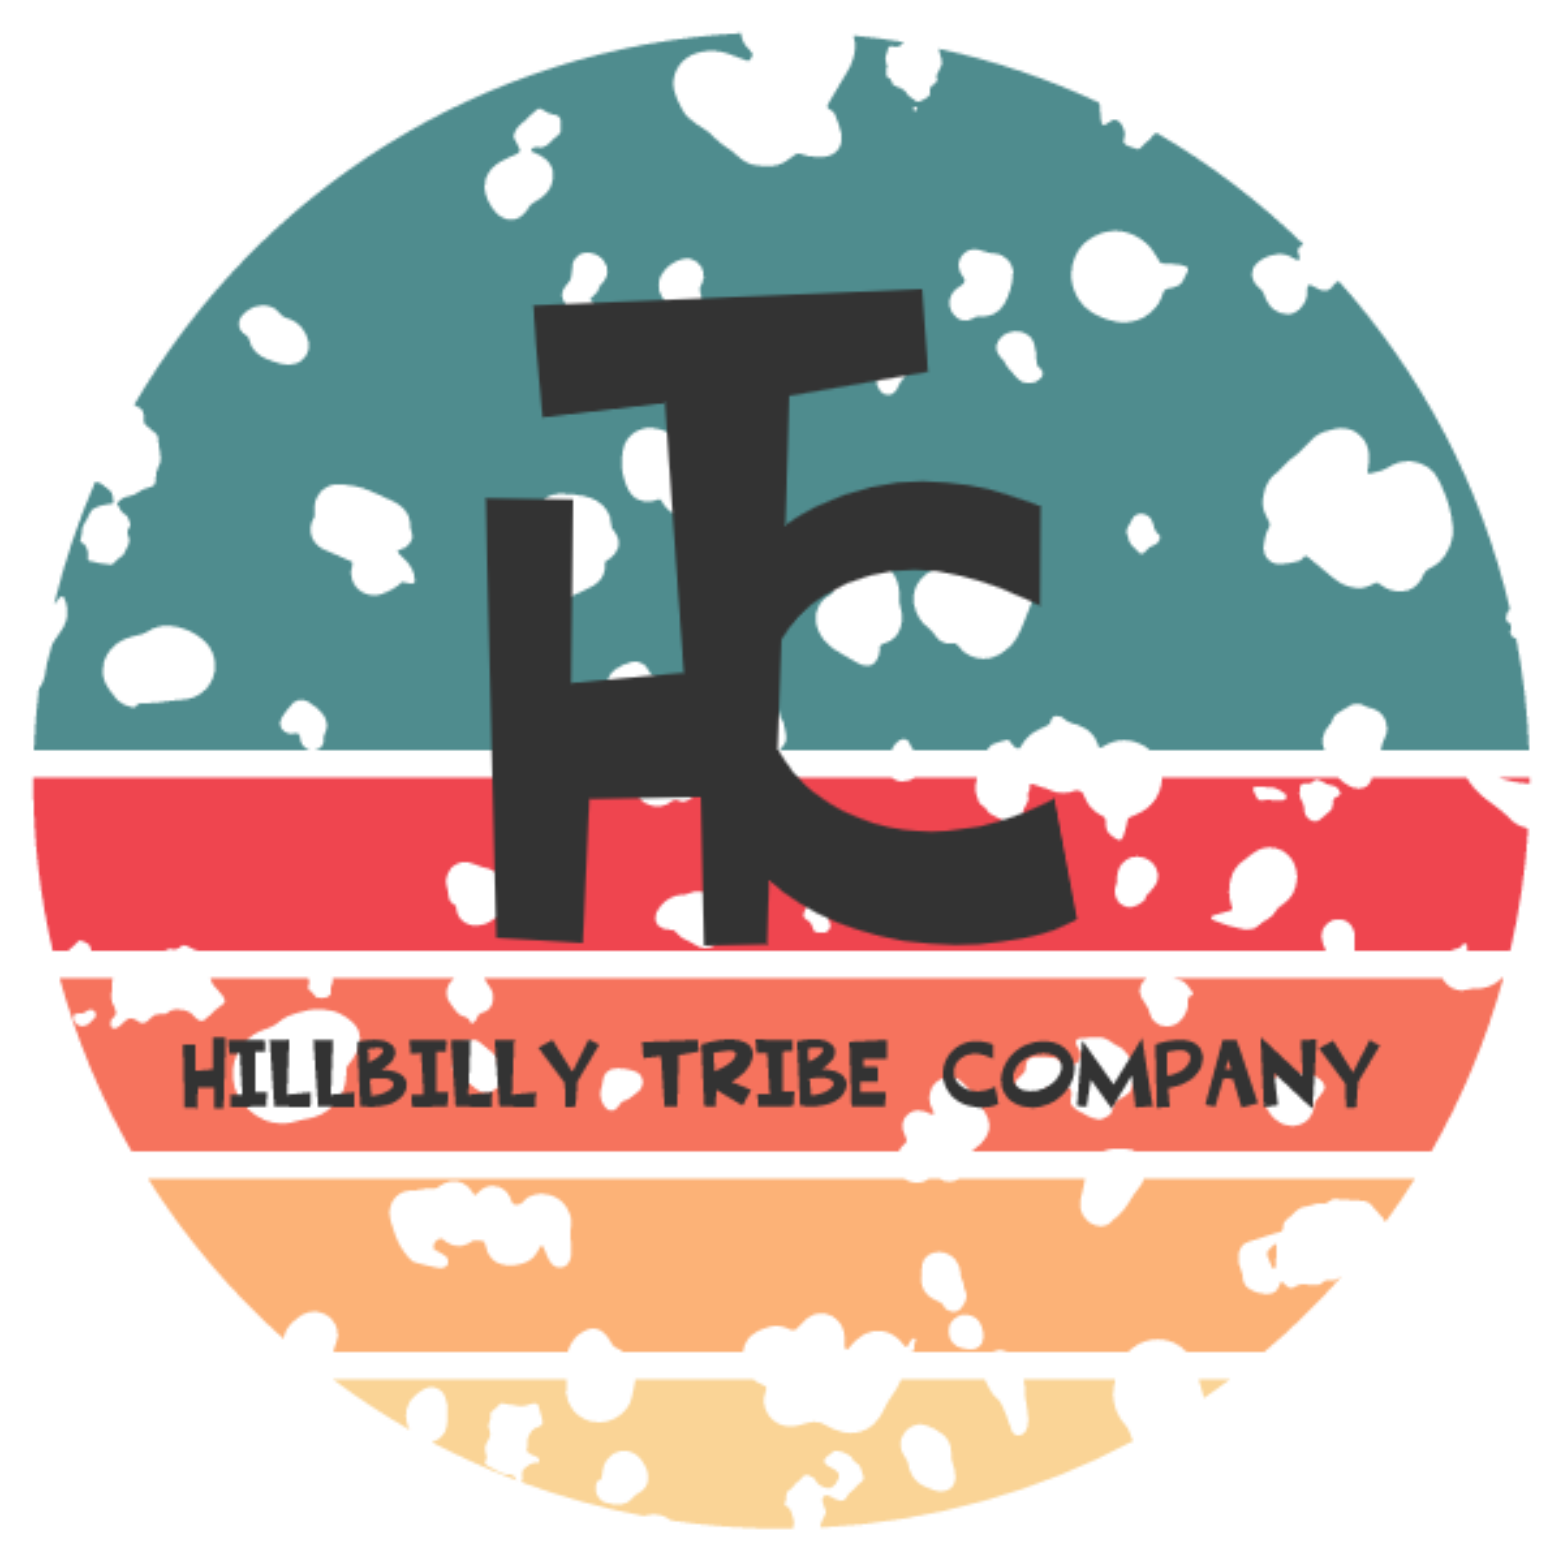 Hillbilly Tribe Company